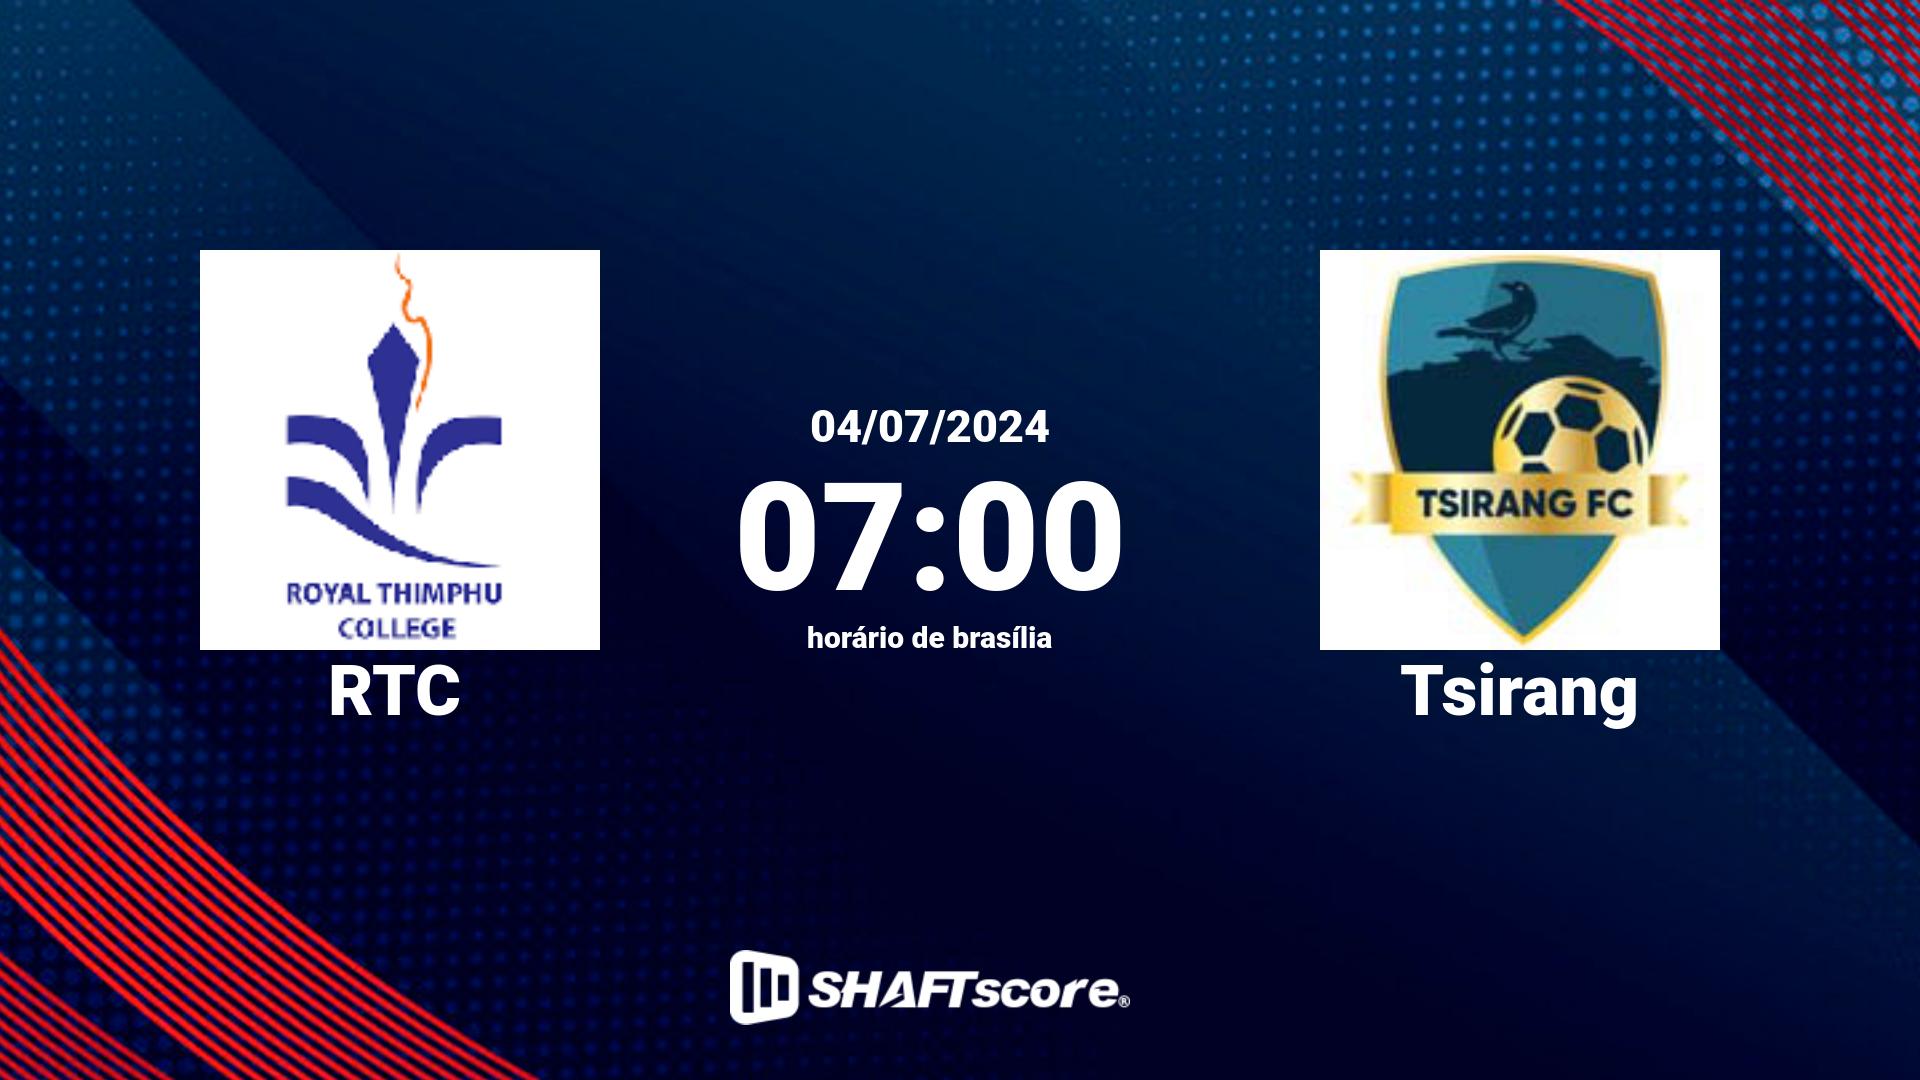 Estatísticas do jogo RTC vs Tsirang 04.07 07:00